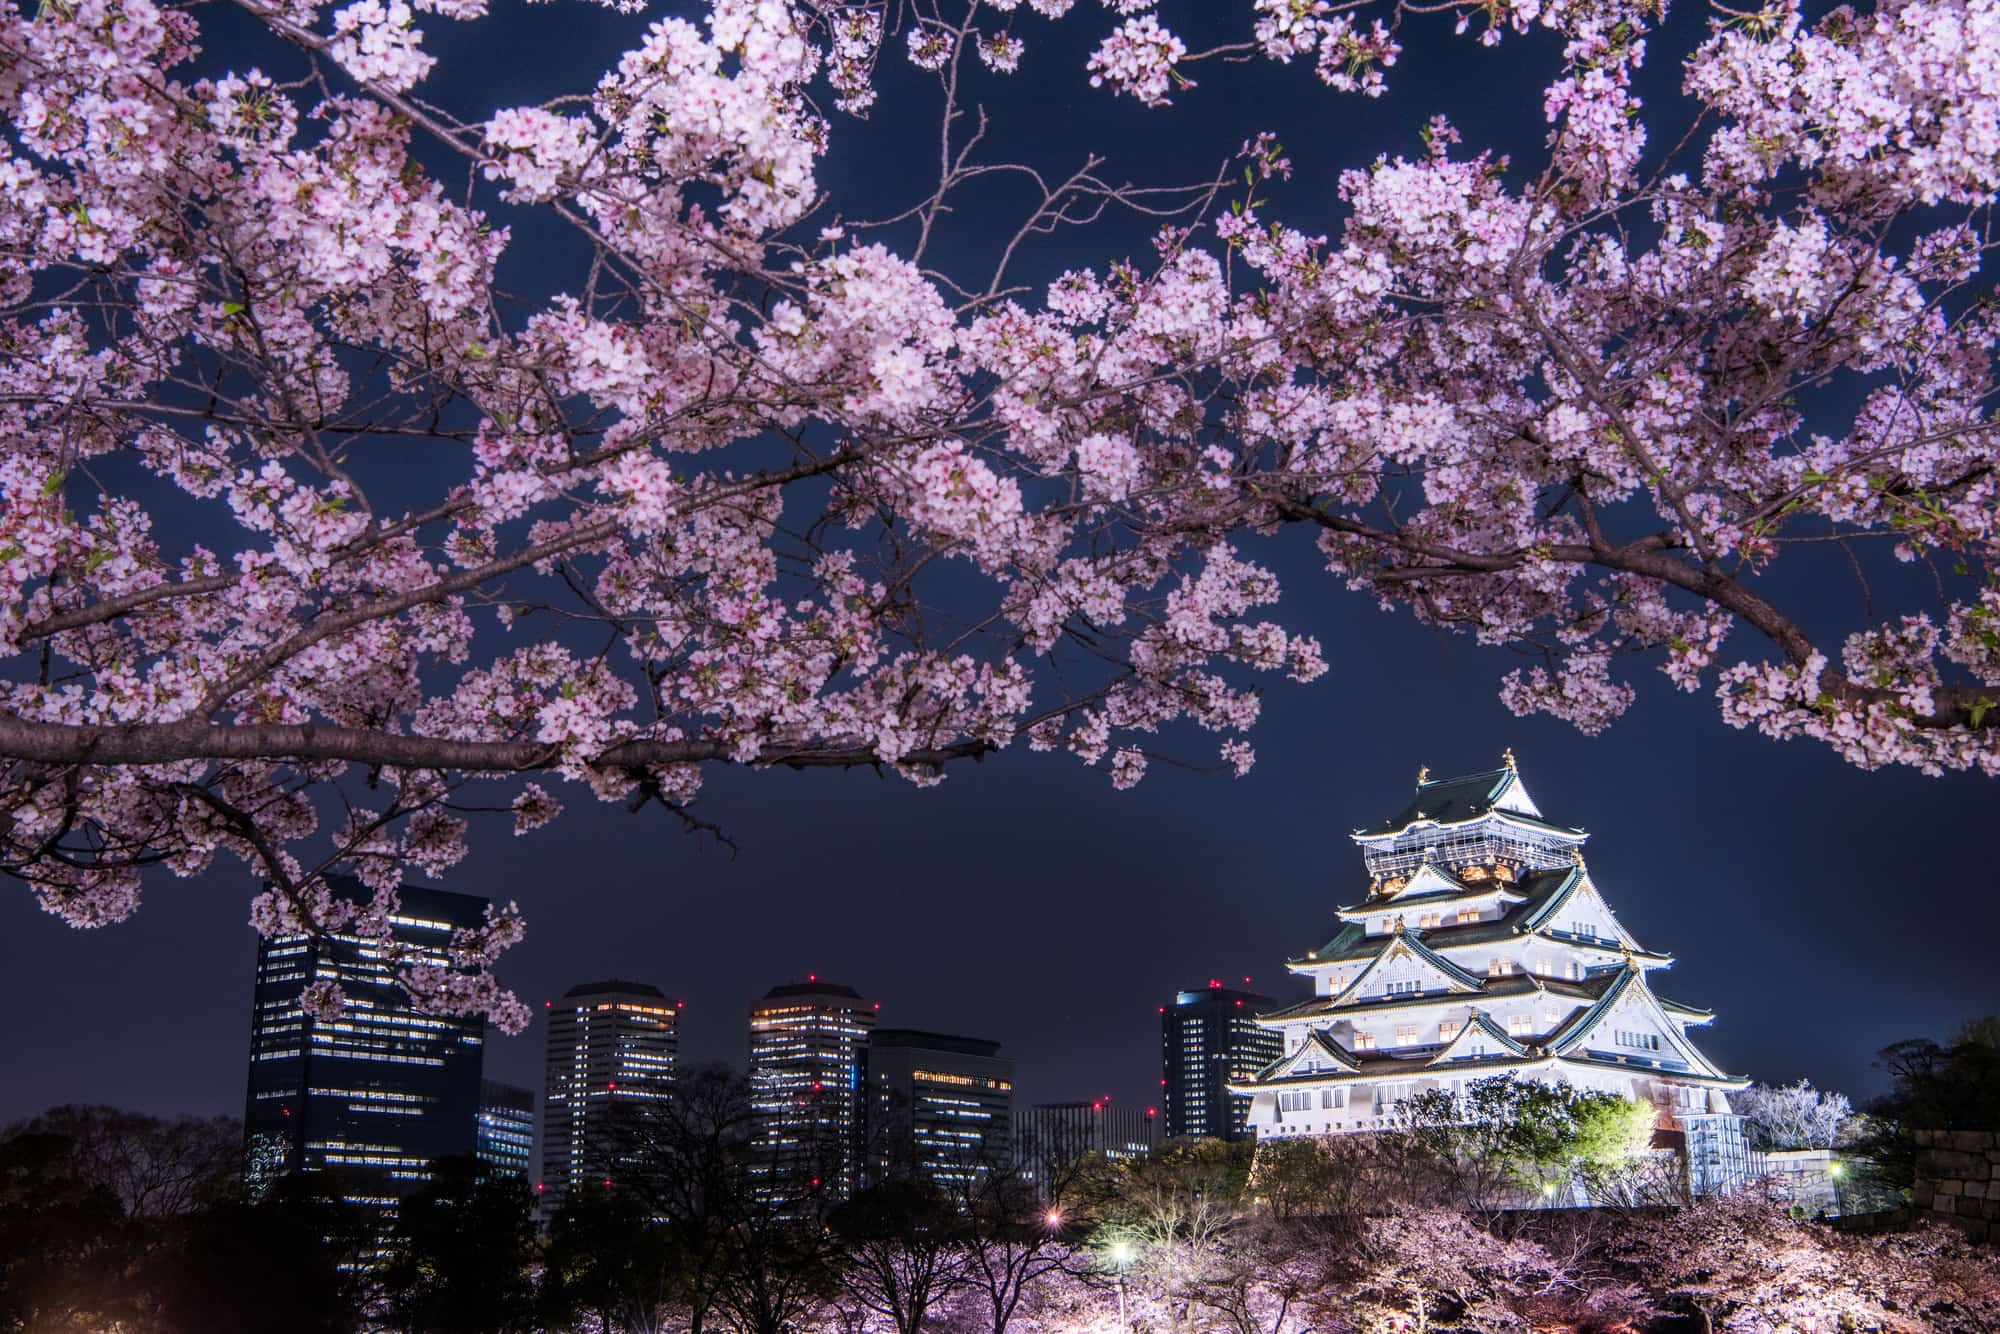 Du lịch Nhật Bản: Hoa anh đào Osaka chào đón bạn đến với vùng đất nổi tiếng với vẻ đẹp đặc trưng của hoa anh đào Nhật Bản. Hãy khám phá các ngôi đền lịch sử, đồng quê tràn ngập hoa anh đào, thưởng thức món ăn truyền thống và trải nghiệm cuộc sống hiện đại của Nhật Bản.